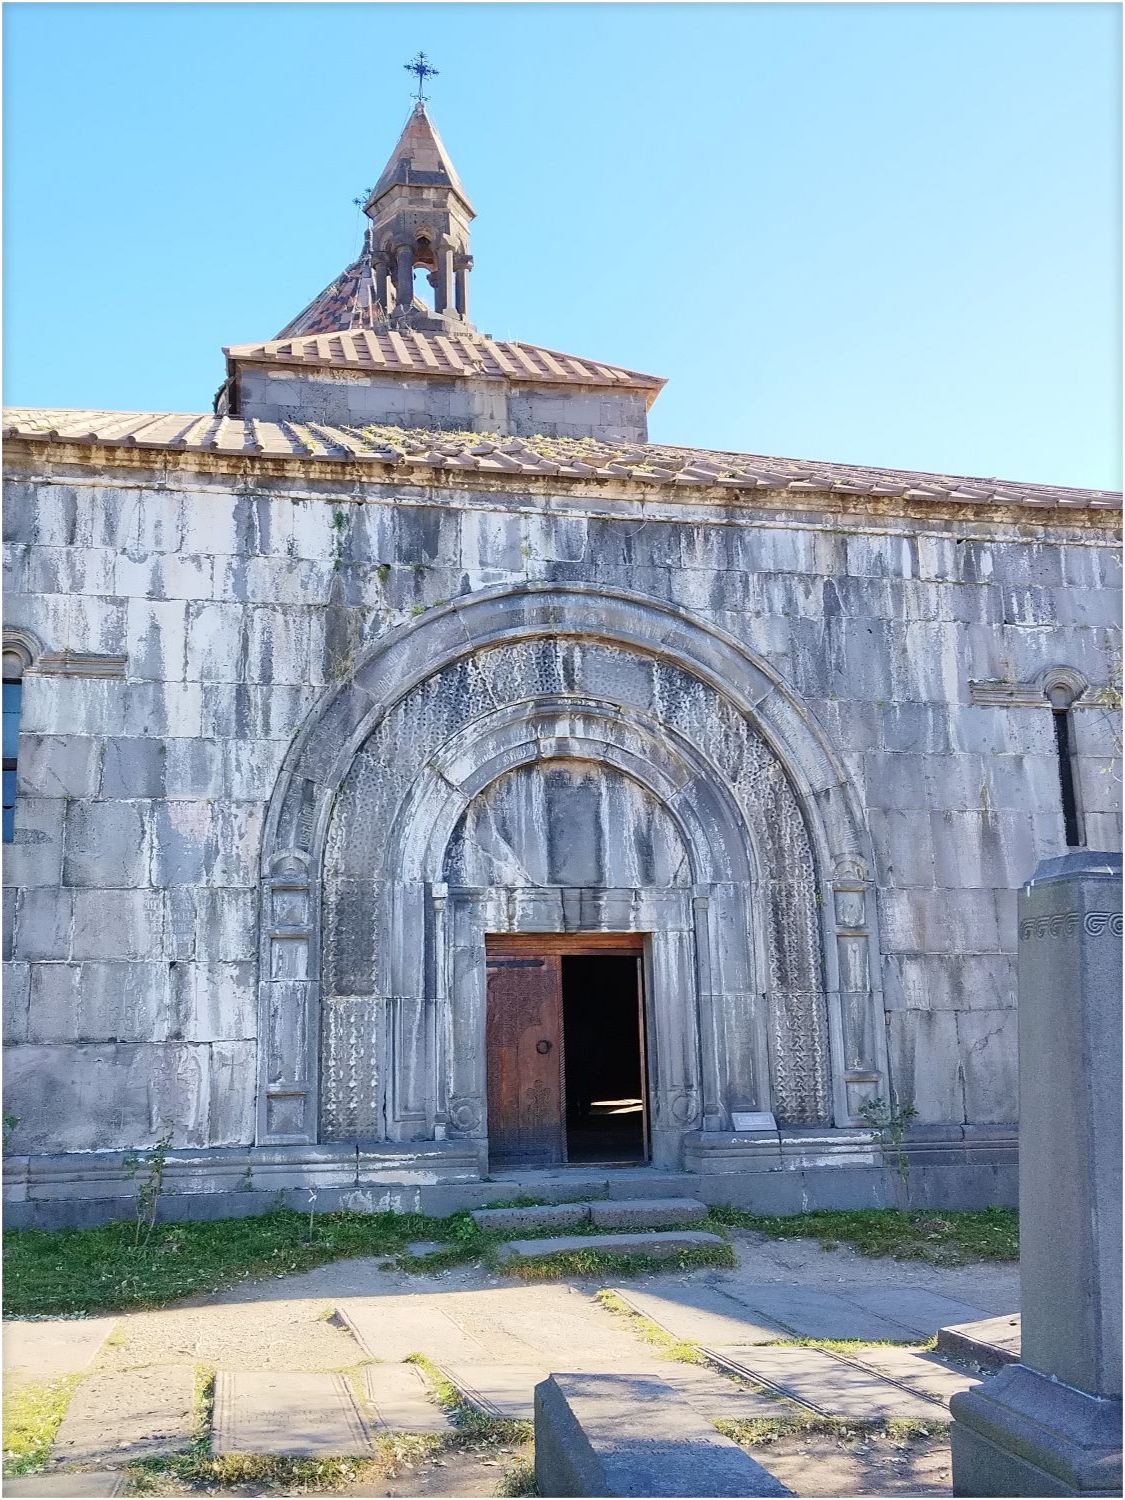 哈格帕特修道院，中世纪的文化遗产。